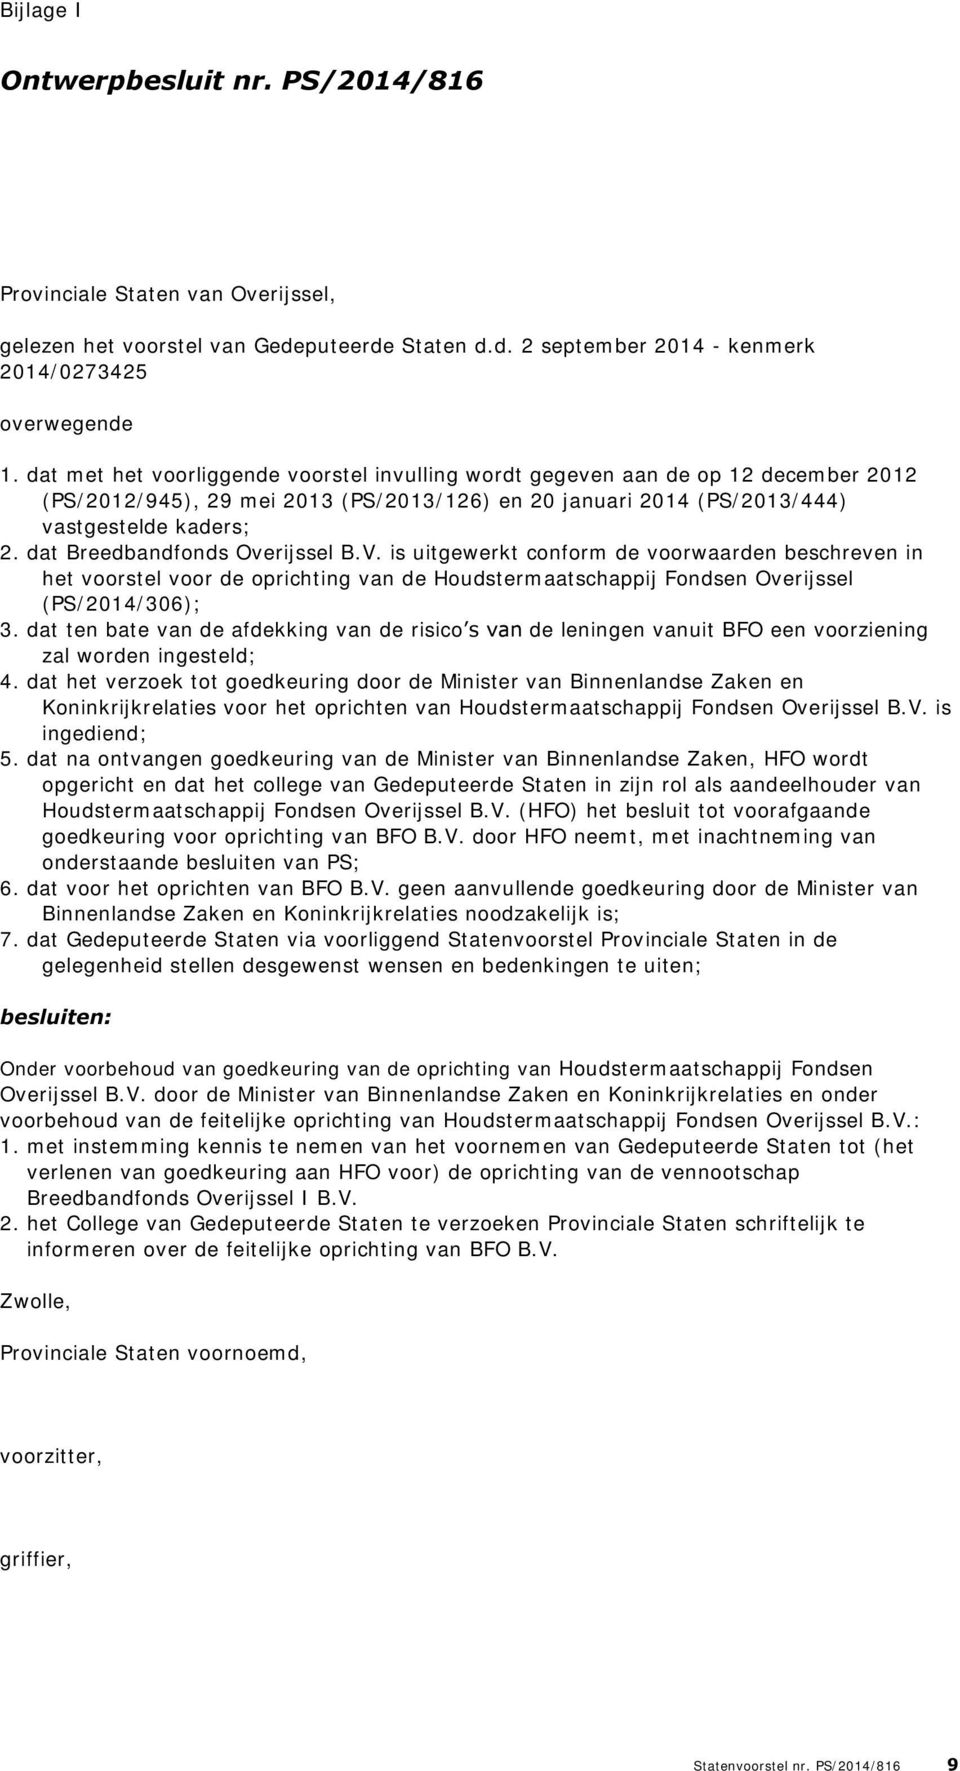 dat Breedbandfonds Overijssel B.V. is uitgewerkt conform de voorwaarden beschreven in het voorstel voor de oprichting van de Houdstermaatschappij Fondsen Overijssel (PS/2014/306); 3.